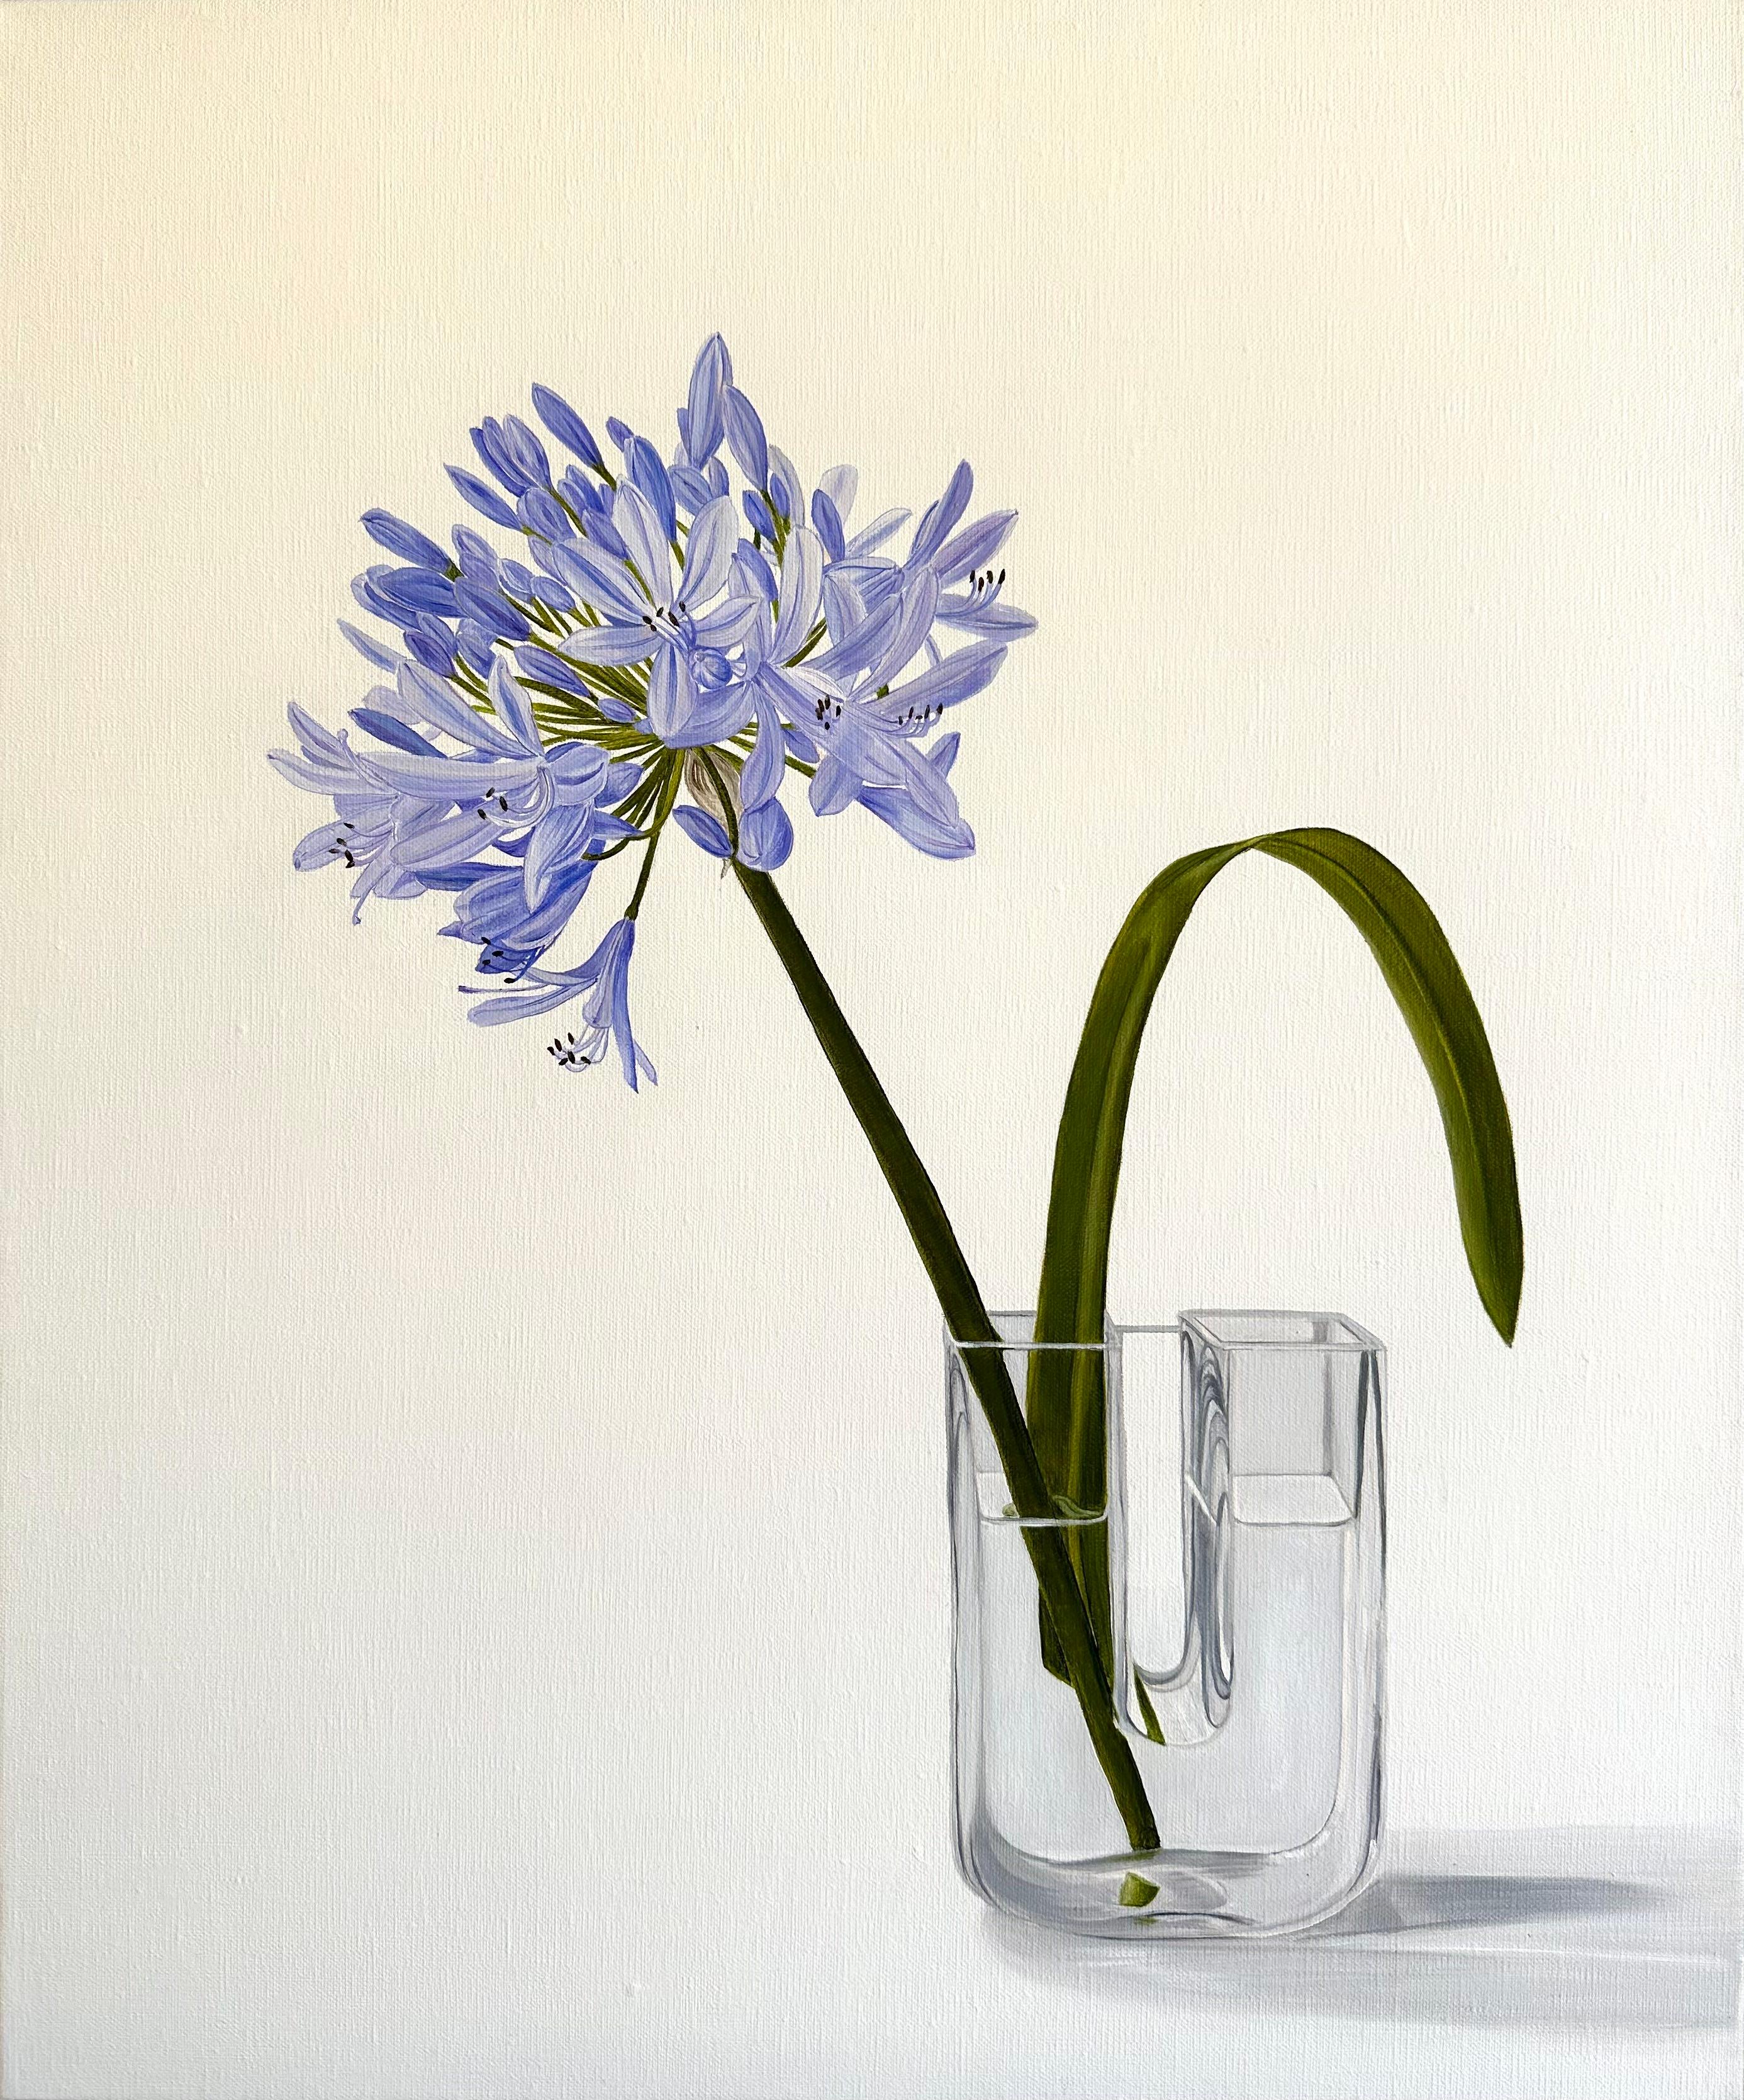 Original botanisches Ölgemälde von Tarn McLean.
Die in Südafrika beheimatete Agapanthus-Blume wurde mit naturgetreuen Farben in Blau, Violett und kühlem Grün bemalt und in eine U-förmige Vase von Swedish Boda gestellt. Das Werk ist reduziert, in Öl